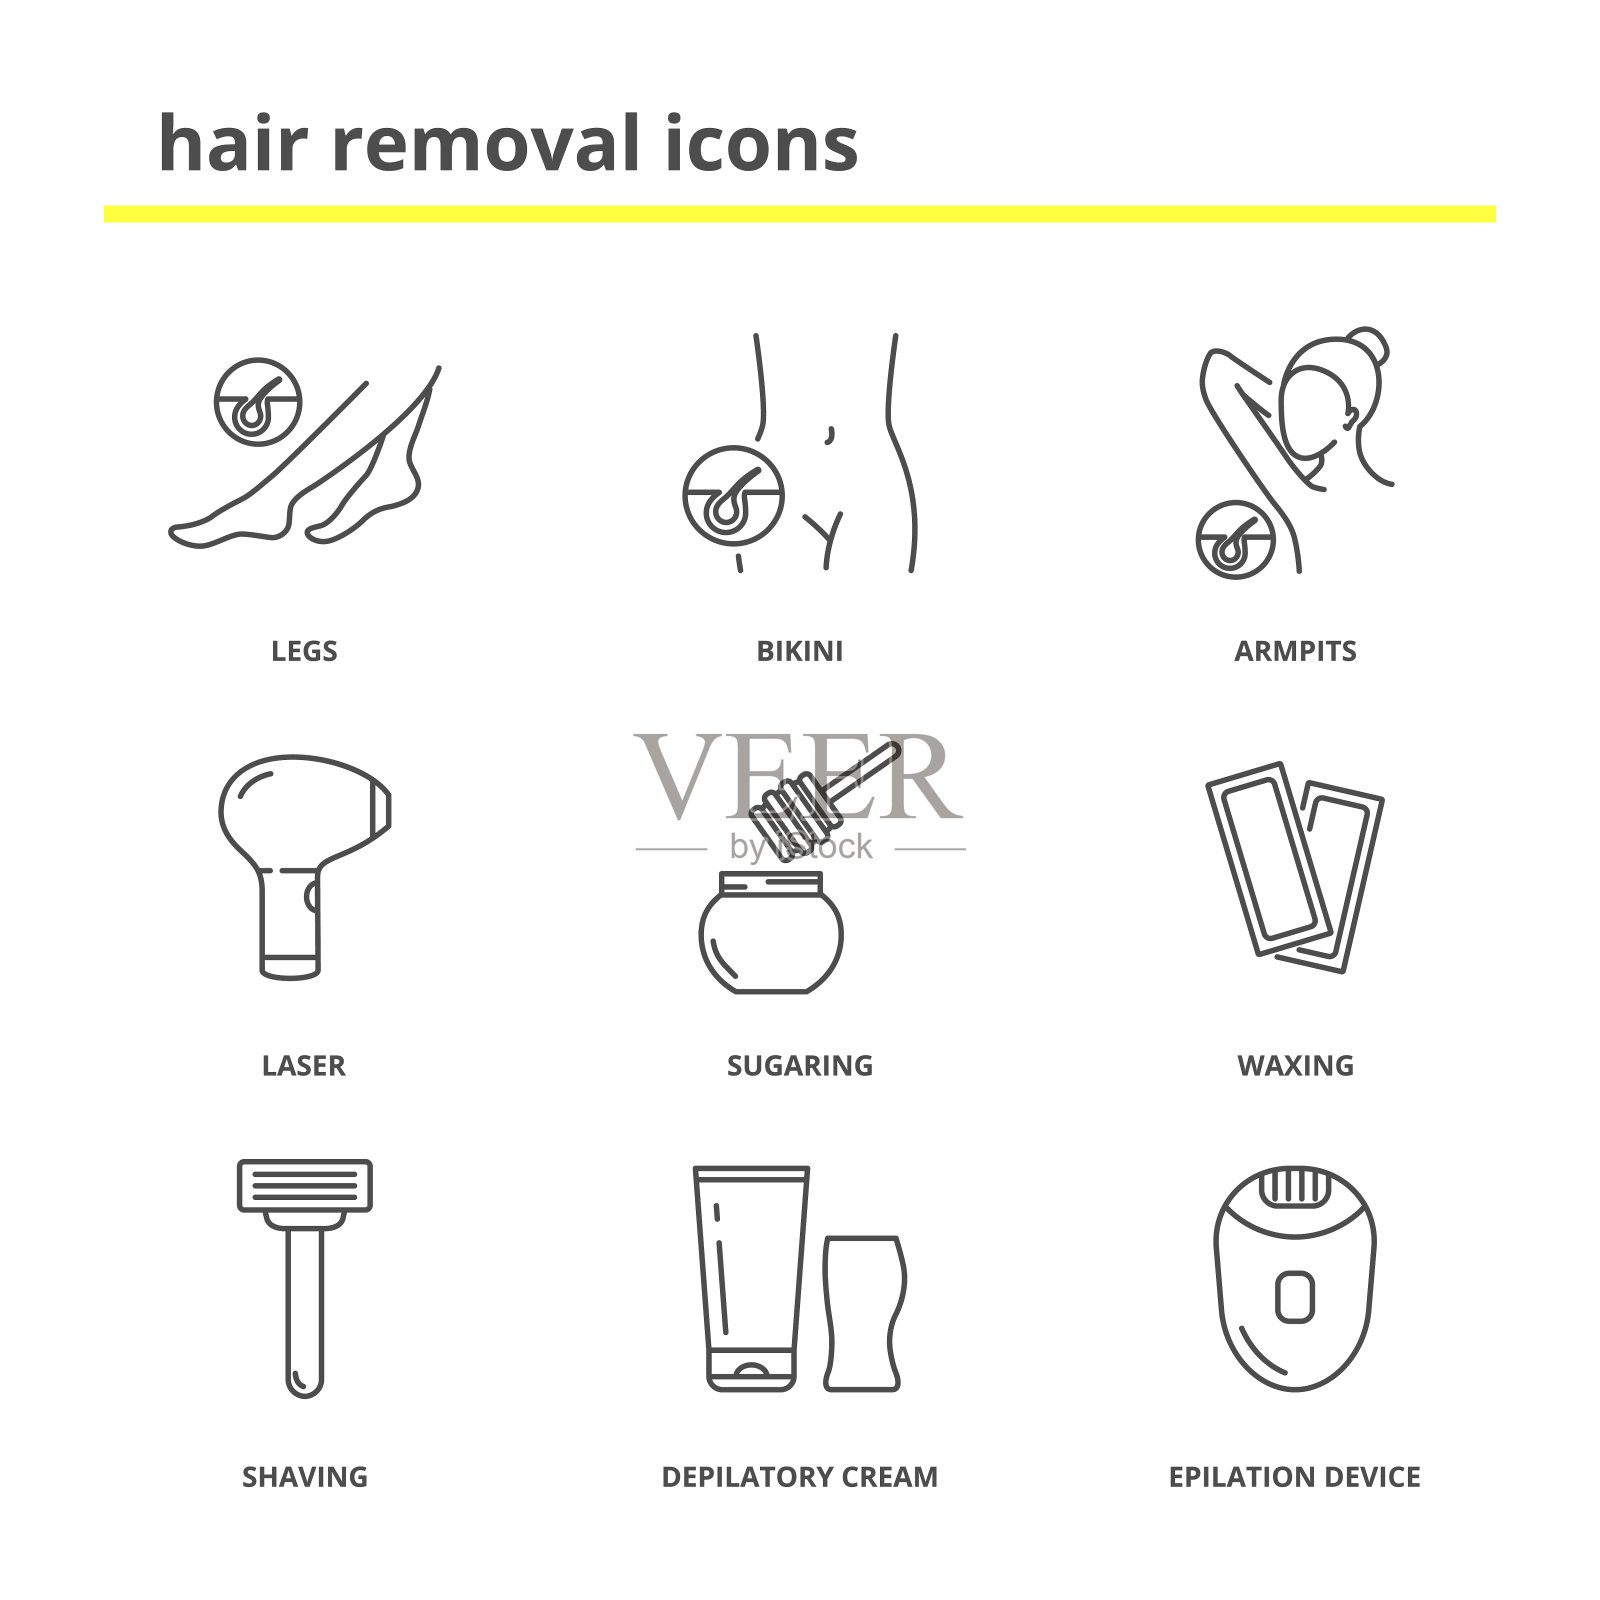 比基尼激光脫毛前你要知的5大事項 - HAiRLESS 專業激光脫毛品牌 | 香港脫毛療程No.1推薦 | 專業永久保養